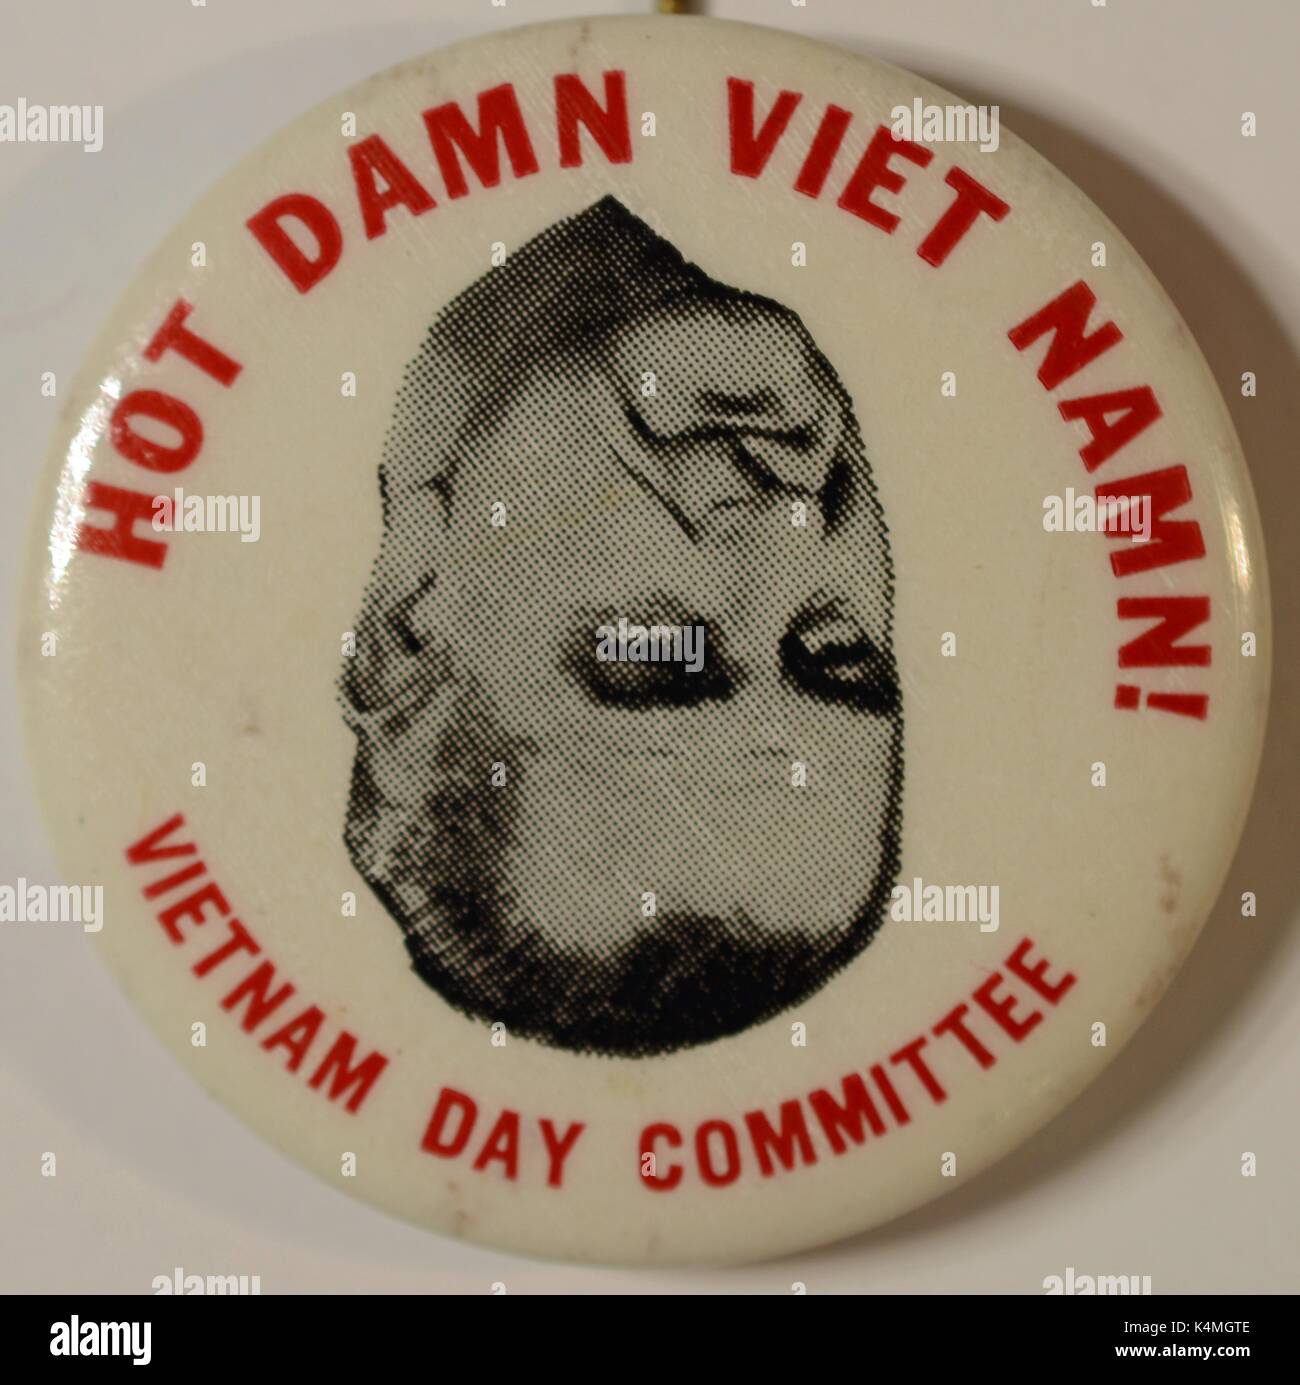 Brosche Button aus dem Vietnam Day Committee mit Bild der Vereinigten Staaten Präsident Lyndon Johnson, mit Text lesen "Hot Damn Viet Namn", kritisiert der Präsident der Handhabung des Vietnam Krieges, 1965. Stockfoto